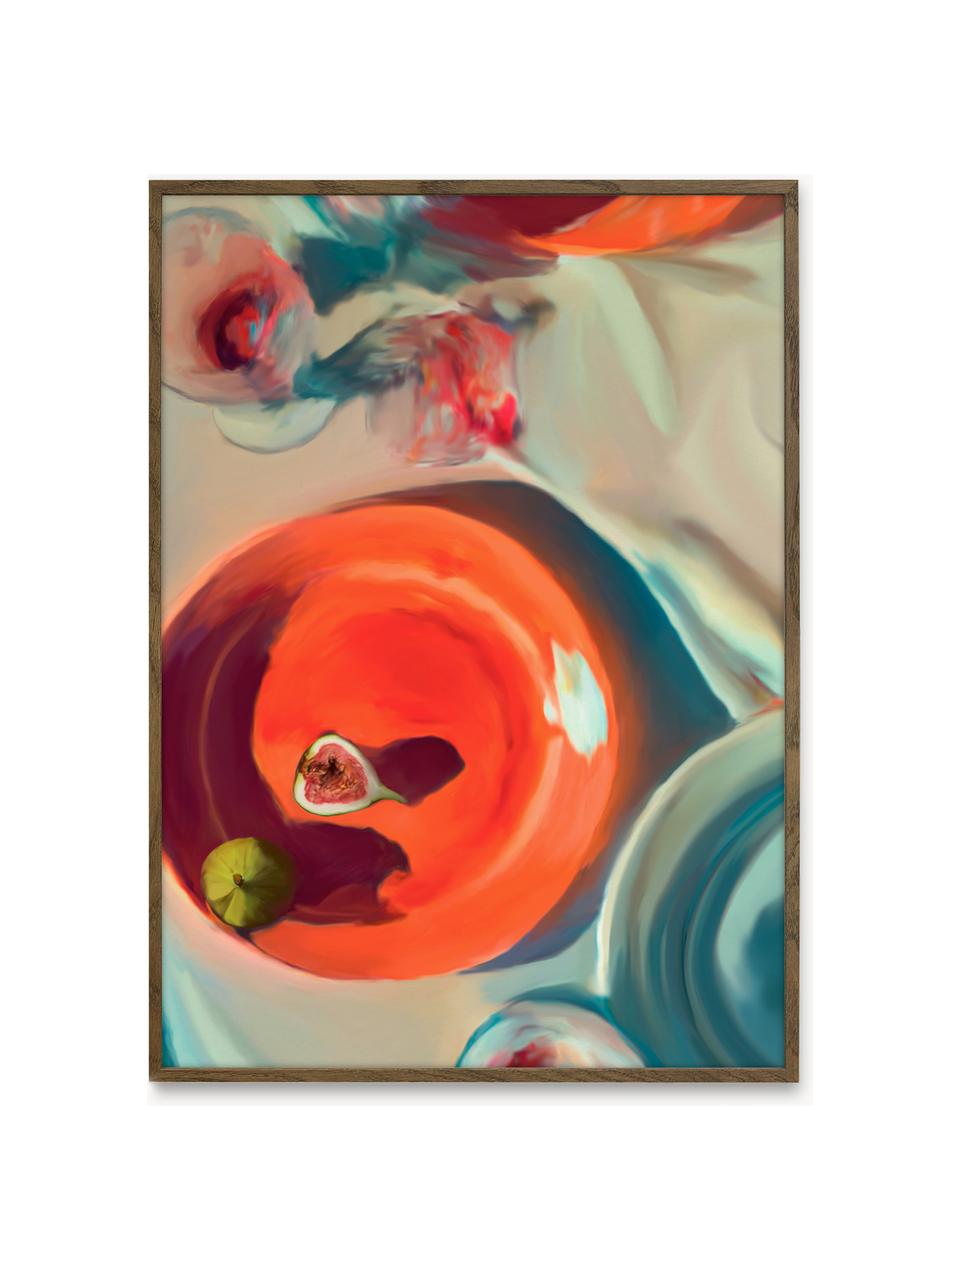 Poster Fine Dinning, 210 g de papier mat de la marque Hahnemühle, impression numérique avec 10 couleurs résistantes aux UV

Ce produit est fabriqué à partir de bois certifié FSC® issu d'une exploitation durable, Rouge corail, grège, bleu, larg. 70 x haut. 100 cm